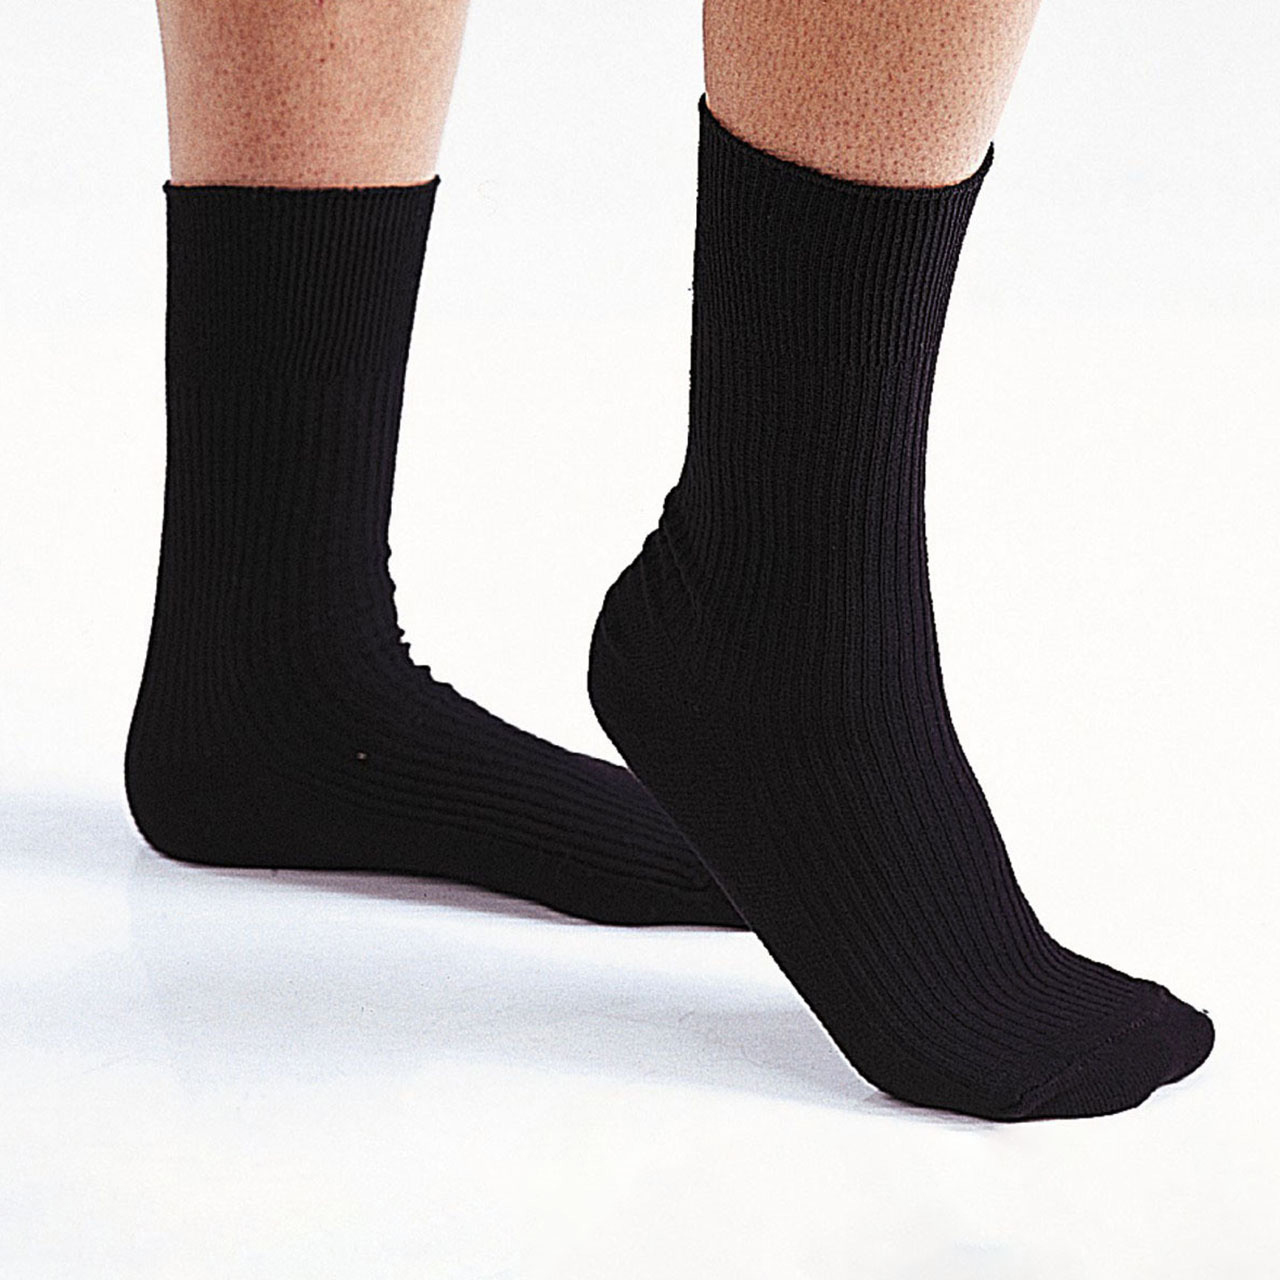 MENS, 2 Gentle Grip Socks - Pack of 12 Pairs